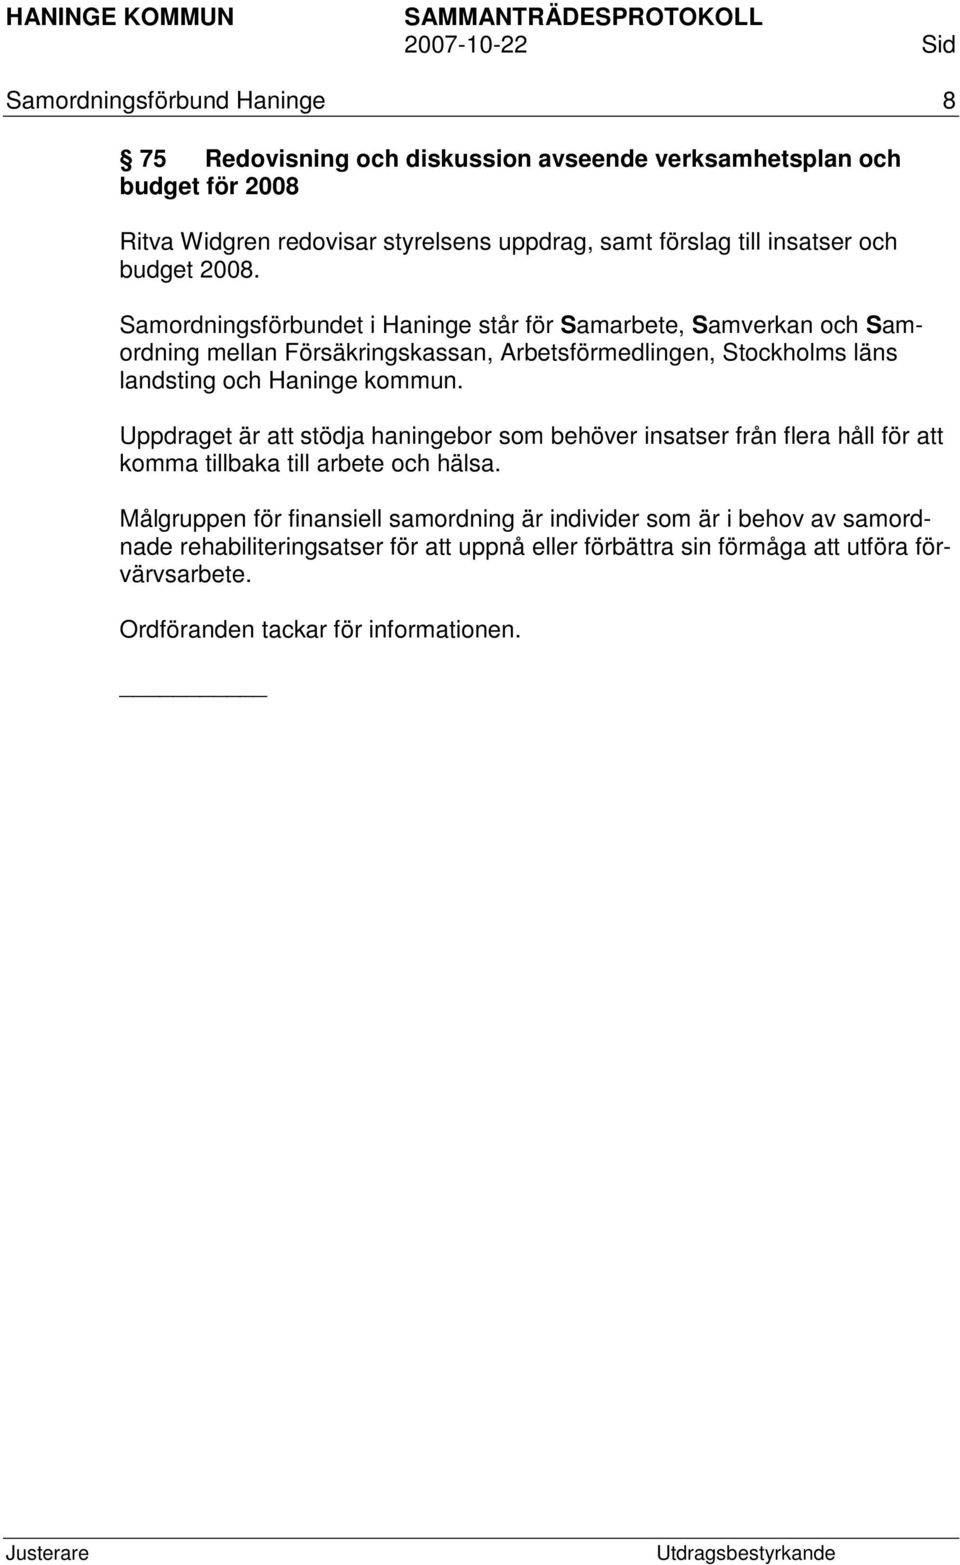 Samordningsförbundet i Haninge står för Samarbete, Samverkan och Samordning mellan Försäkringskassan, Arbetsförmedlingen, Stockholms läns landsting och Haninge kommun.